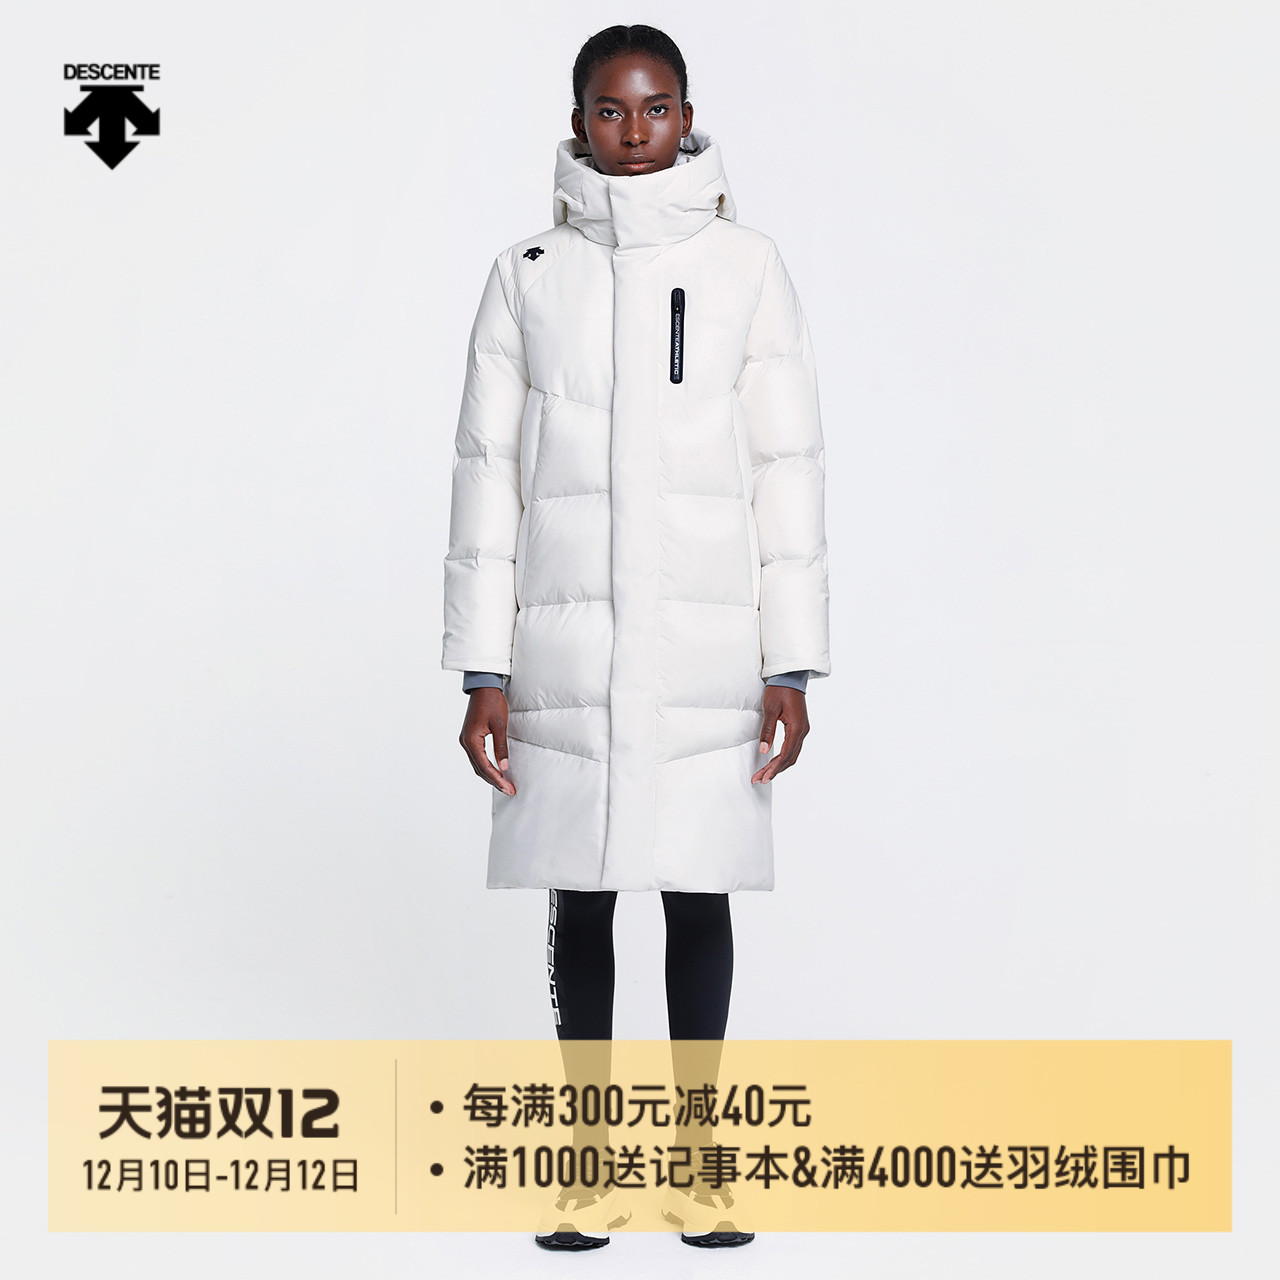 Top 10 Women's Woolen Coat Ordering From China Taobao